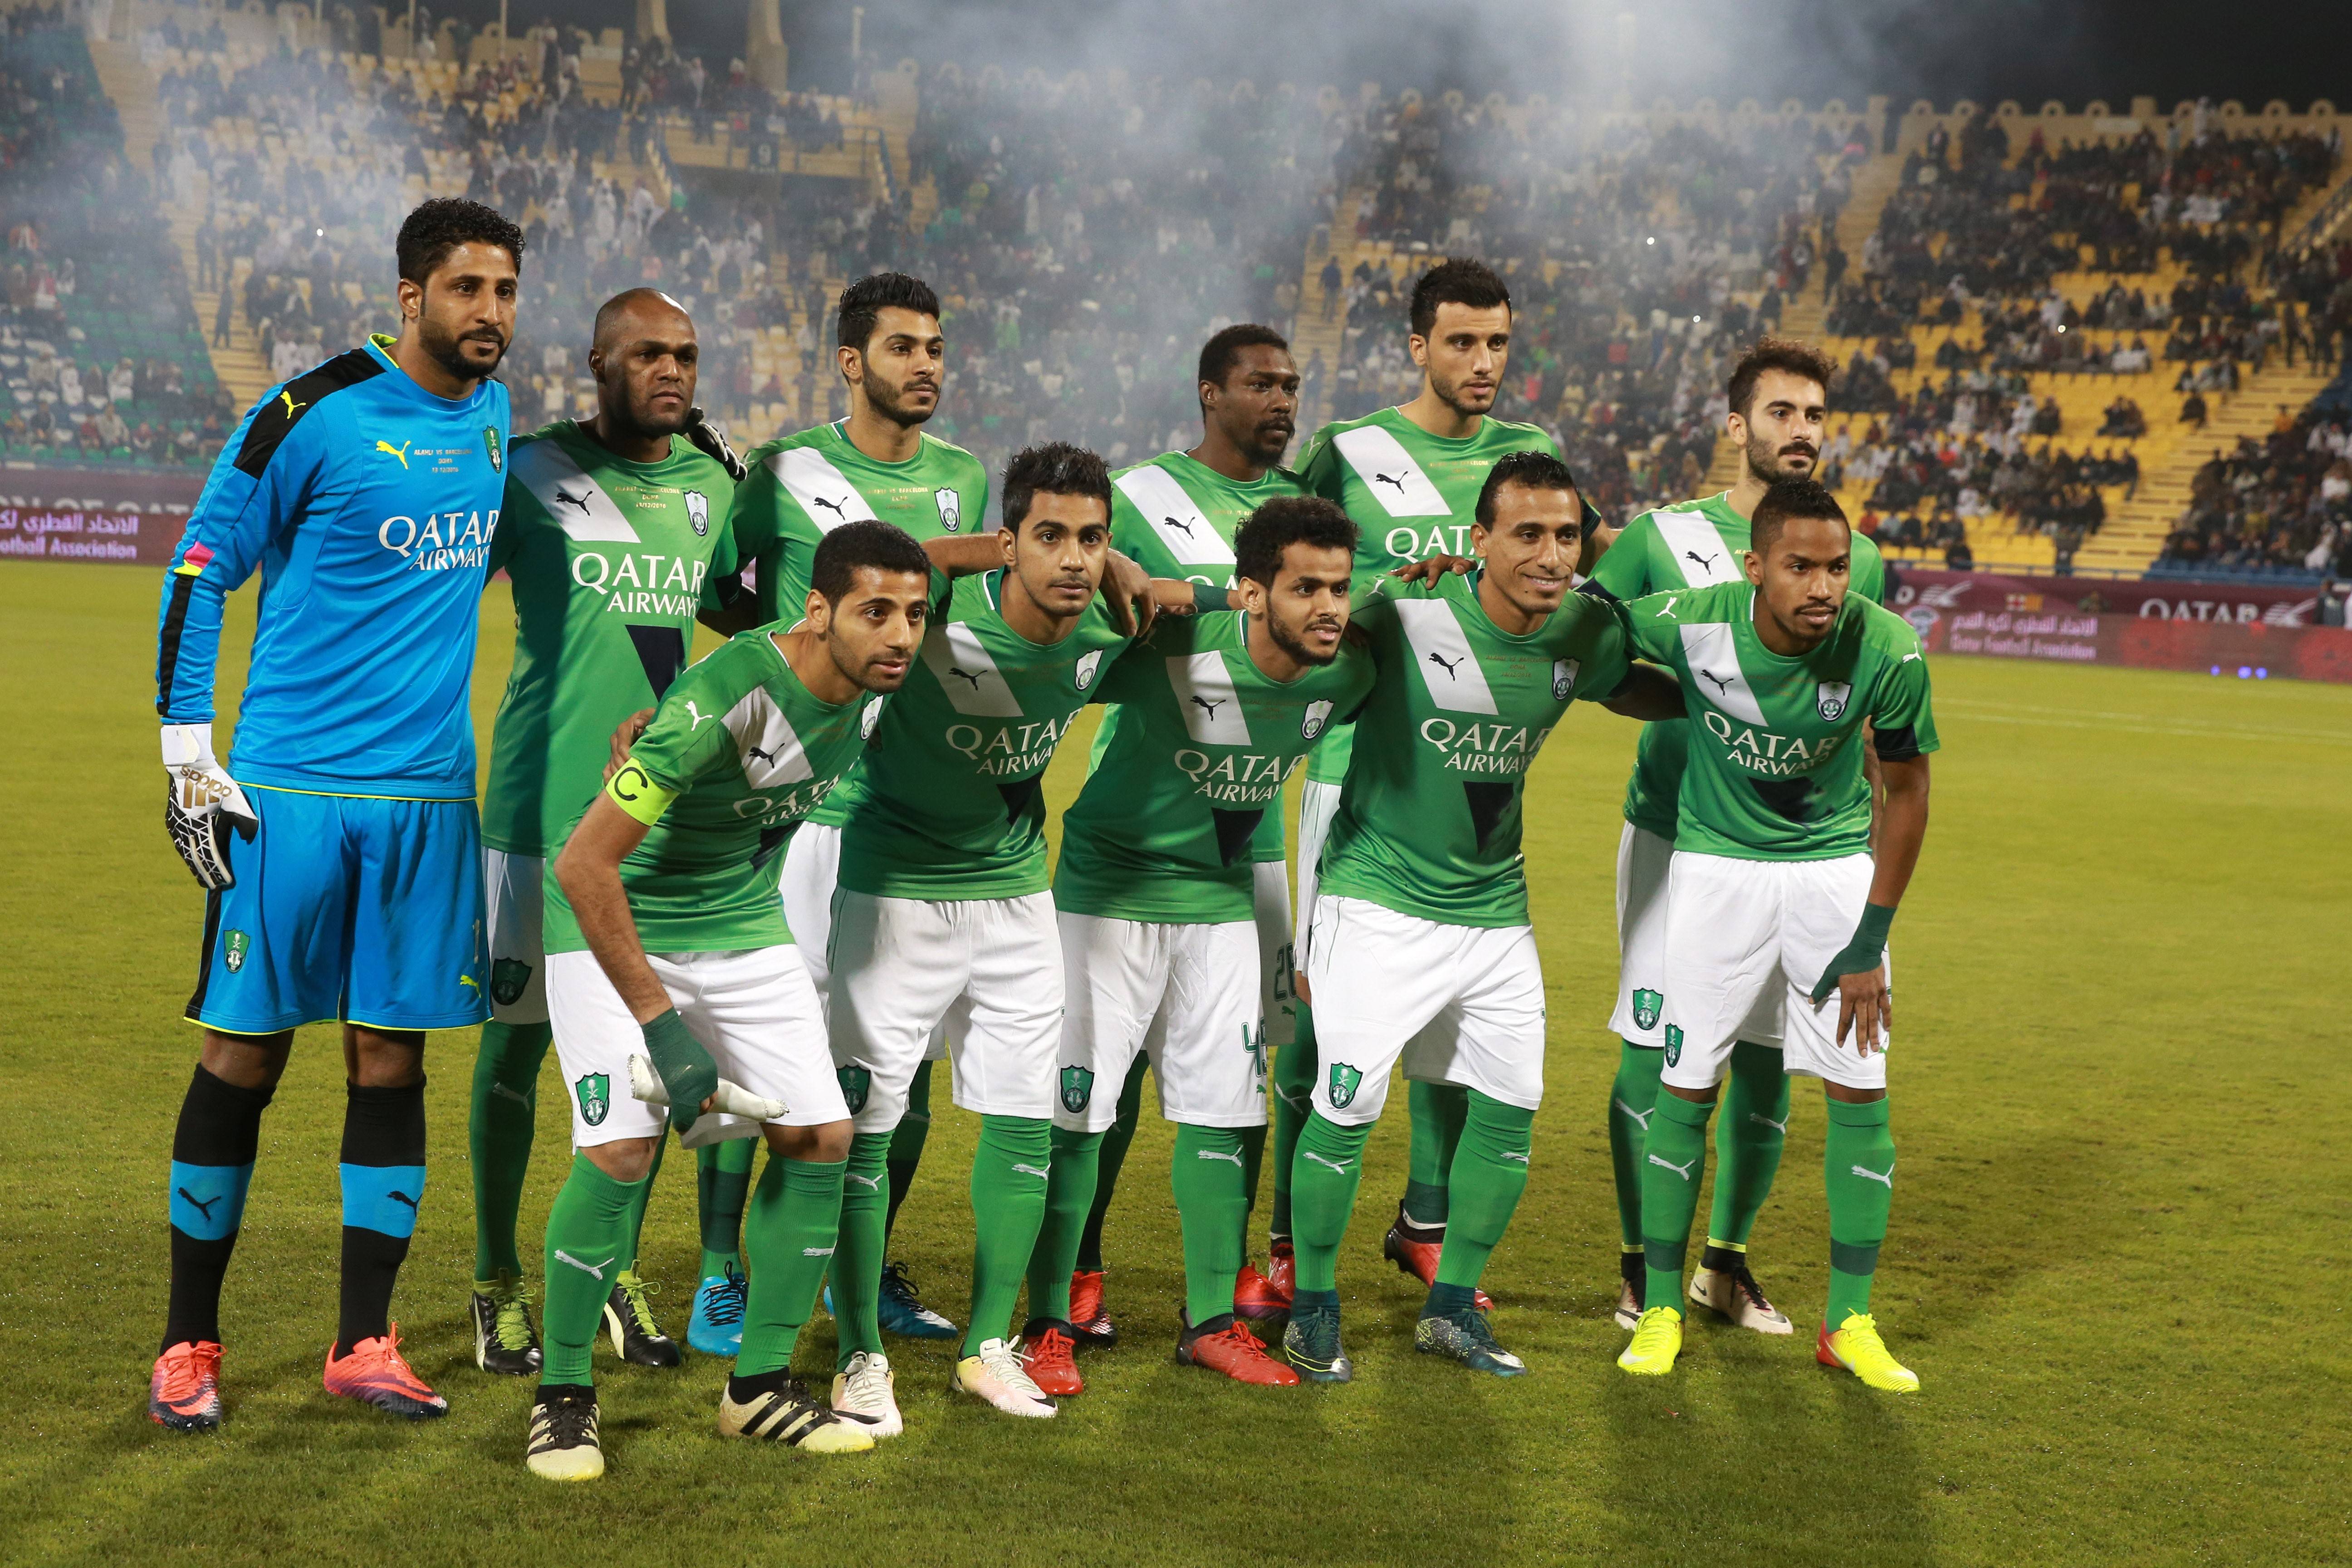 حارس الأهلي يتألق في دوري أبطال آسيا | Football Tribe Arabia